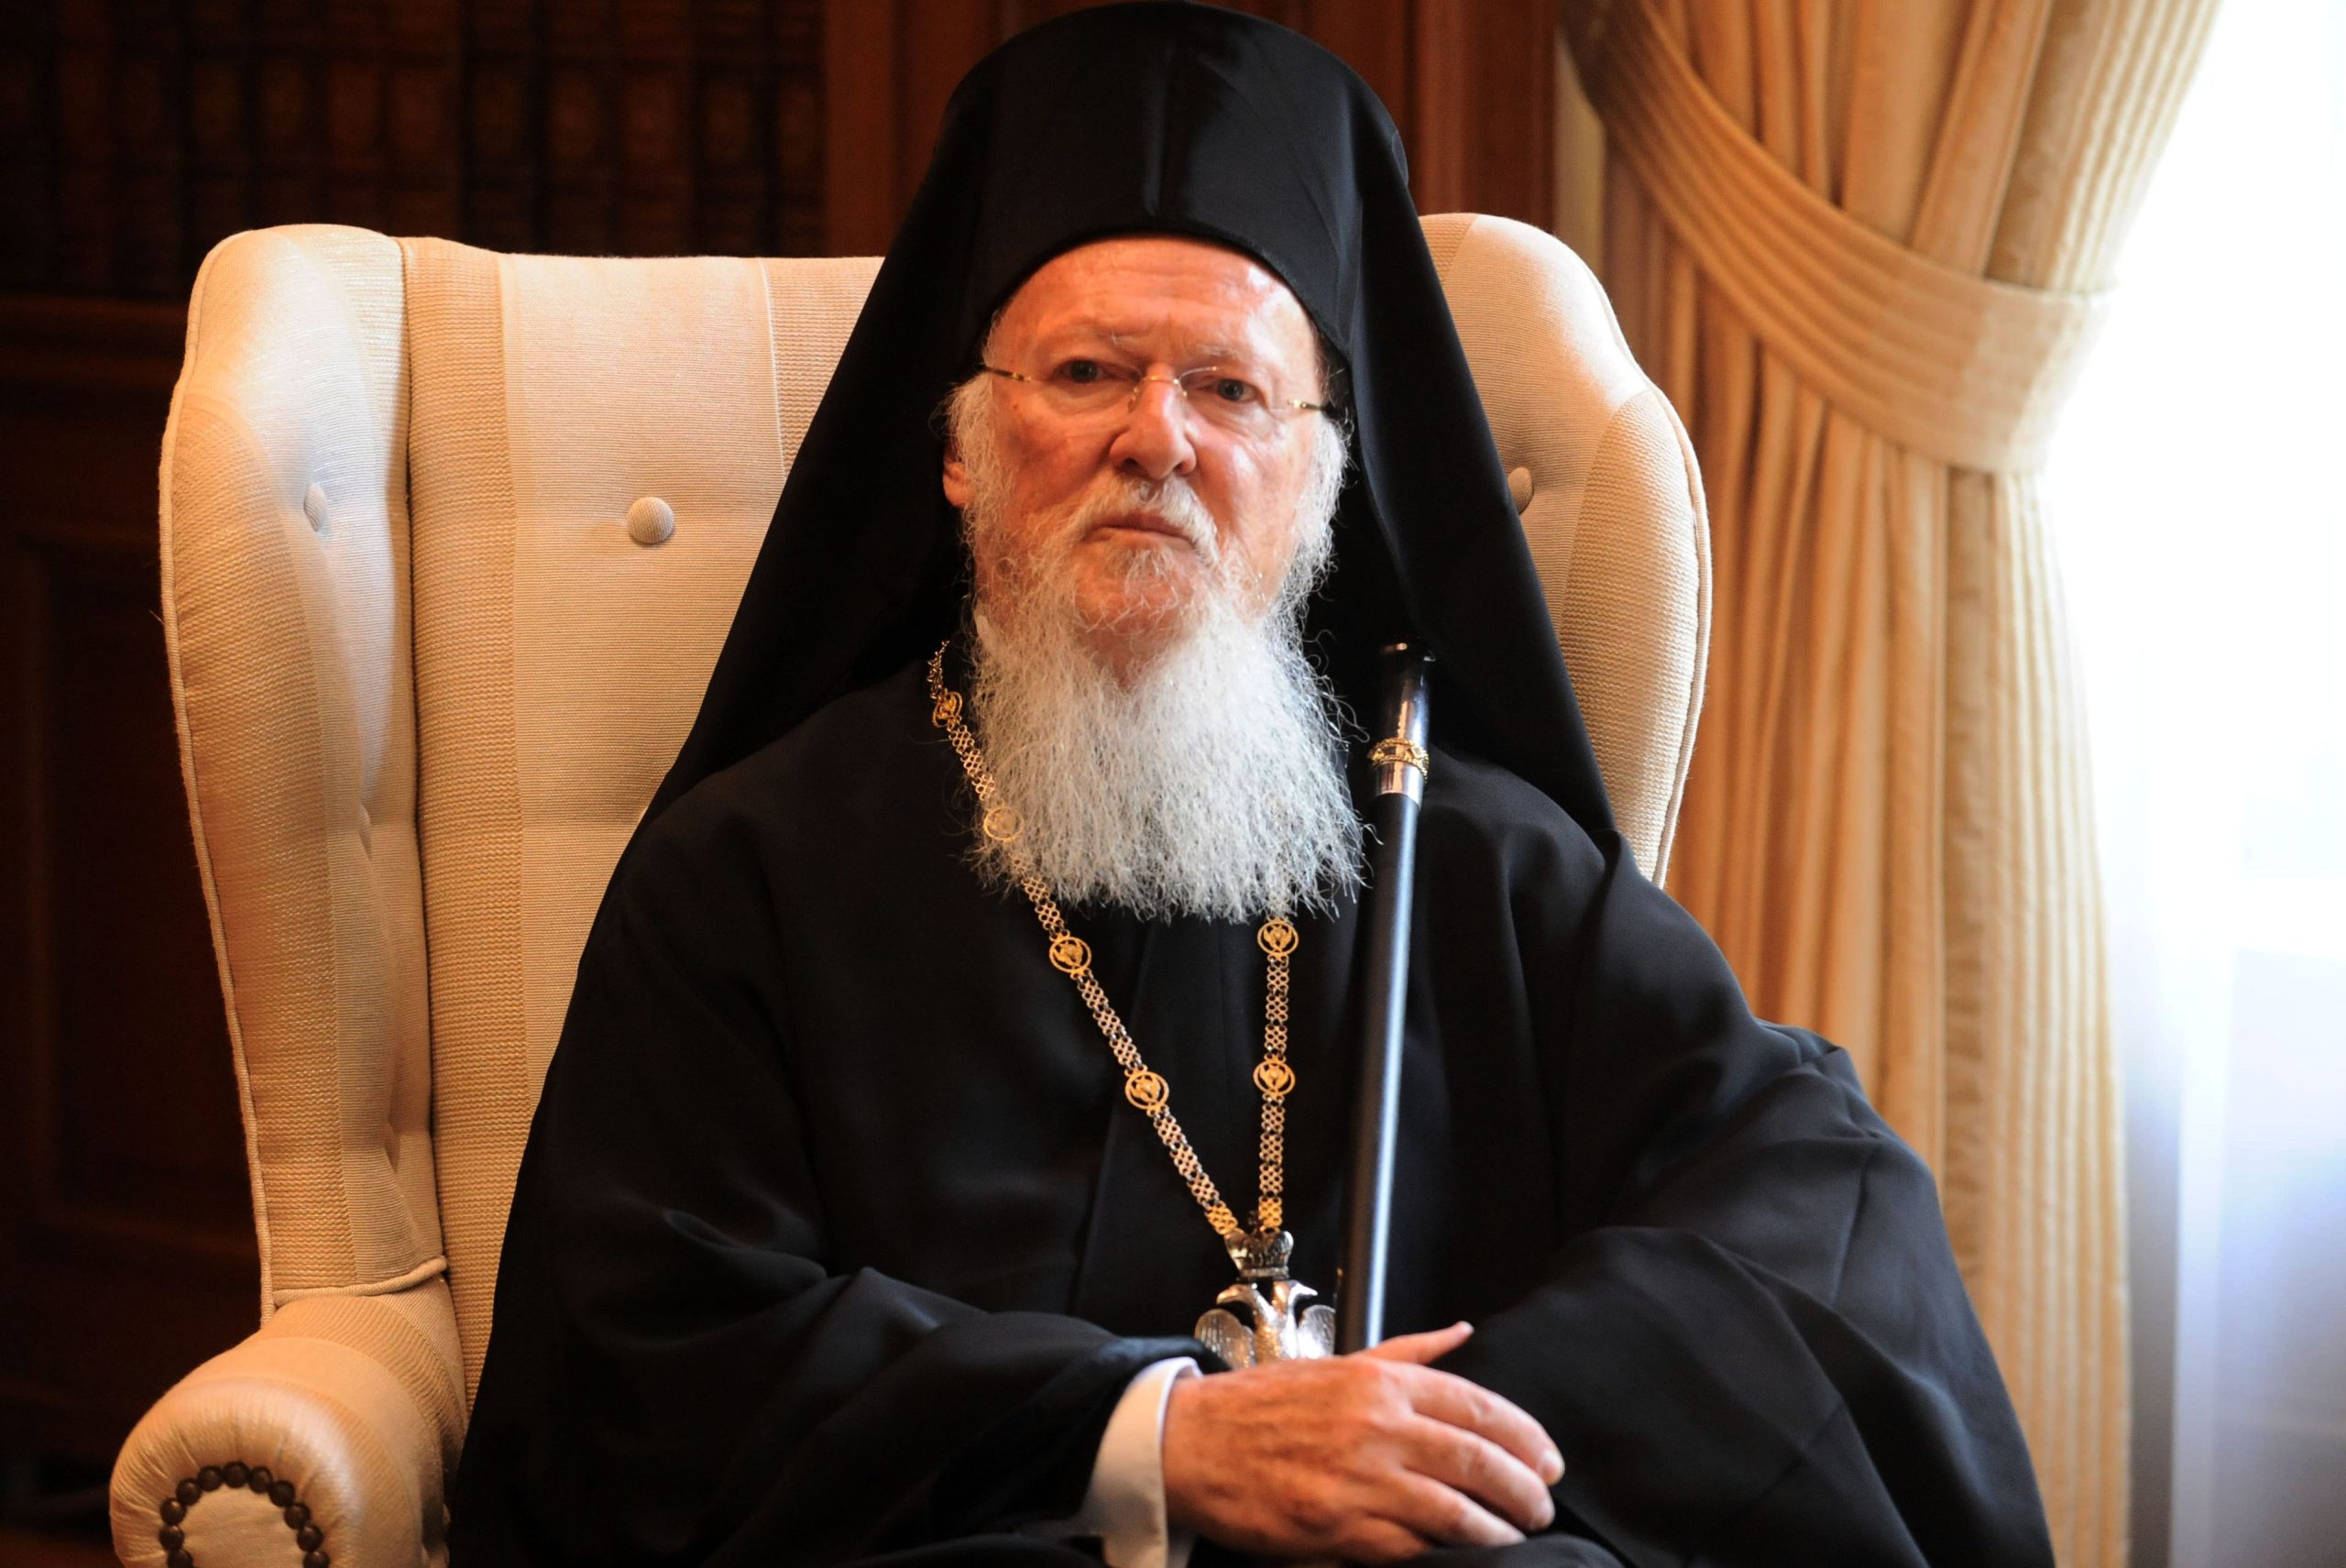 Στο Μάτι για τρισάγιο ο Οικουμενικός Πατριάρχης Βαρθολομαίος (φωτο)